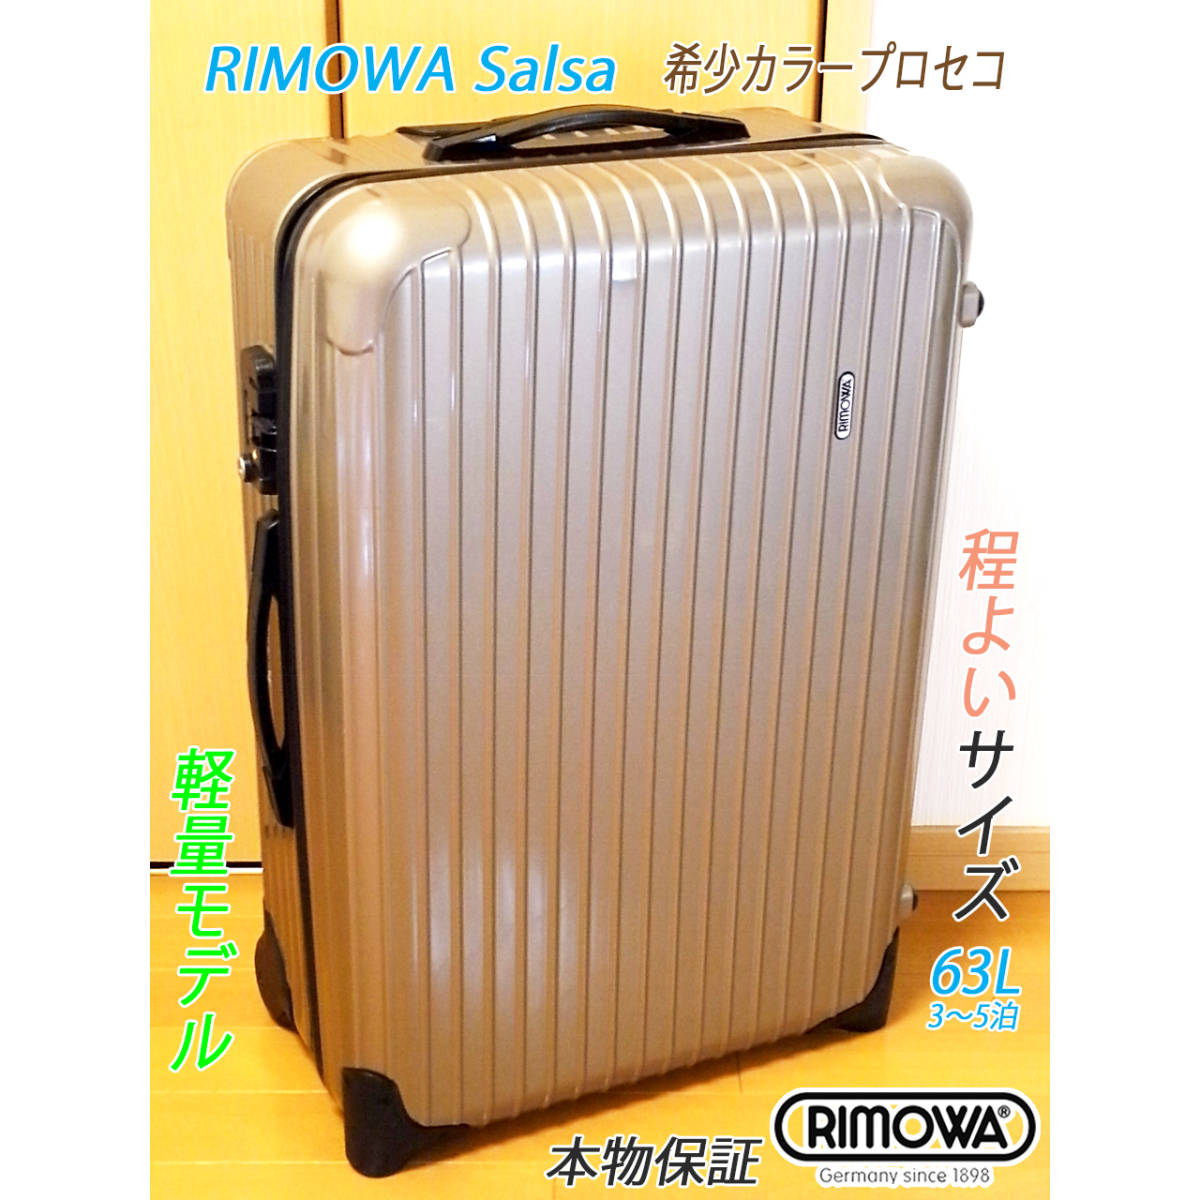 ◇本物! RIMOWA/リモワ サルサ 63L 専用カバー付き 人気希少色